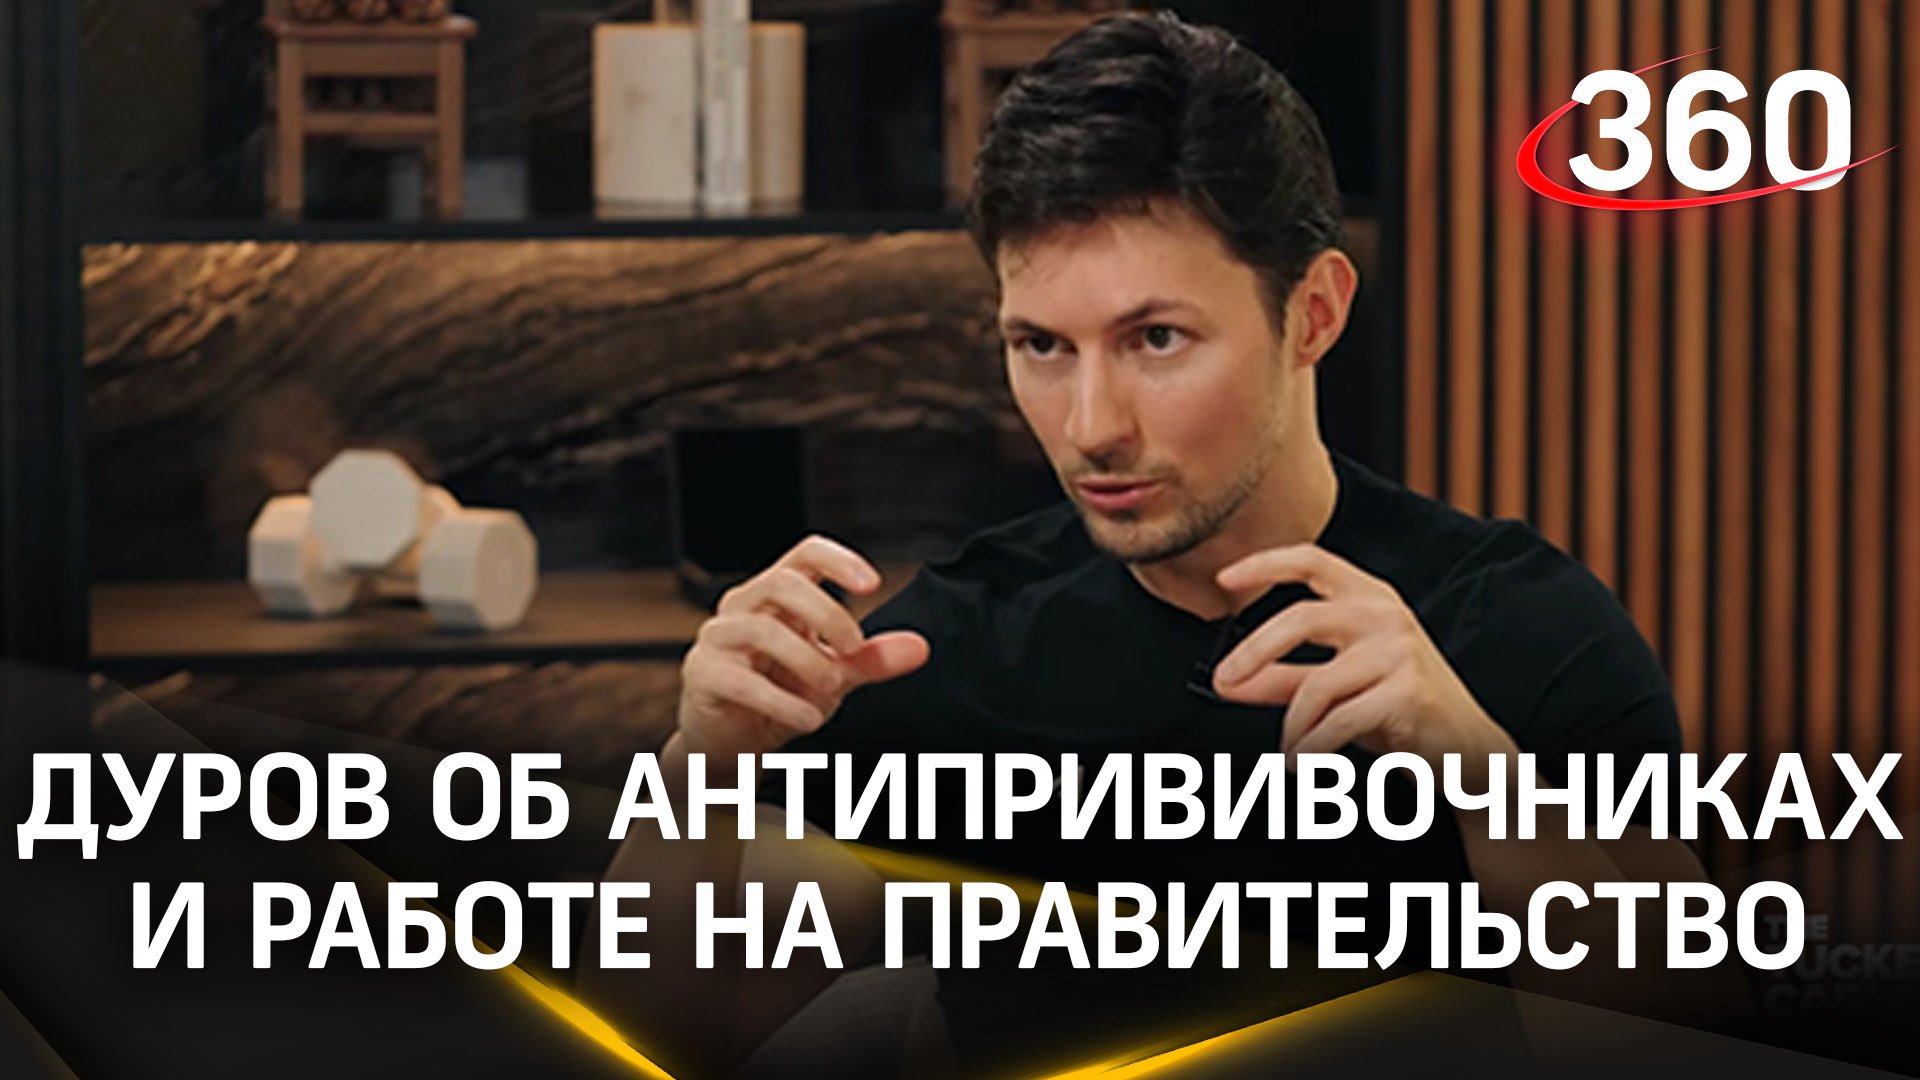 «Мы не хотели ограничивать критически настроенные голоса», - Павел Дуров о работе на правительство